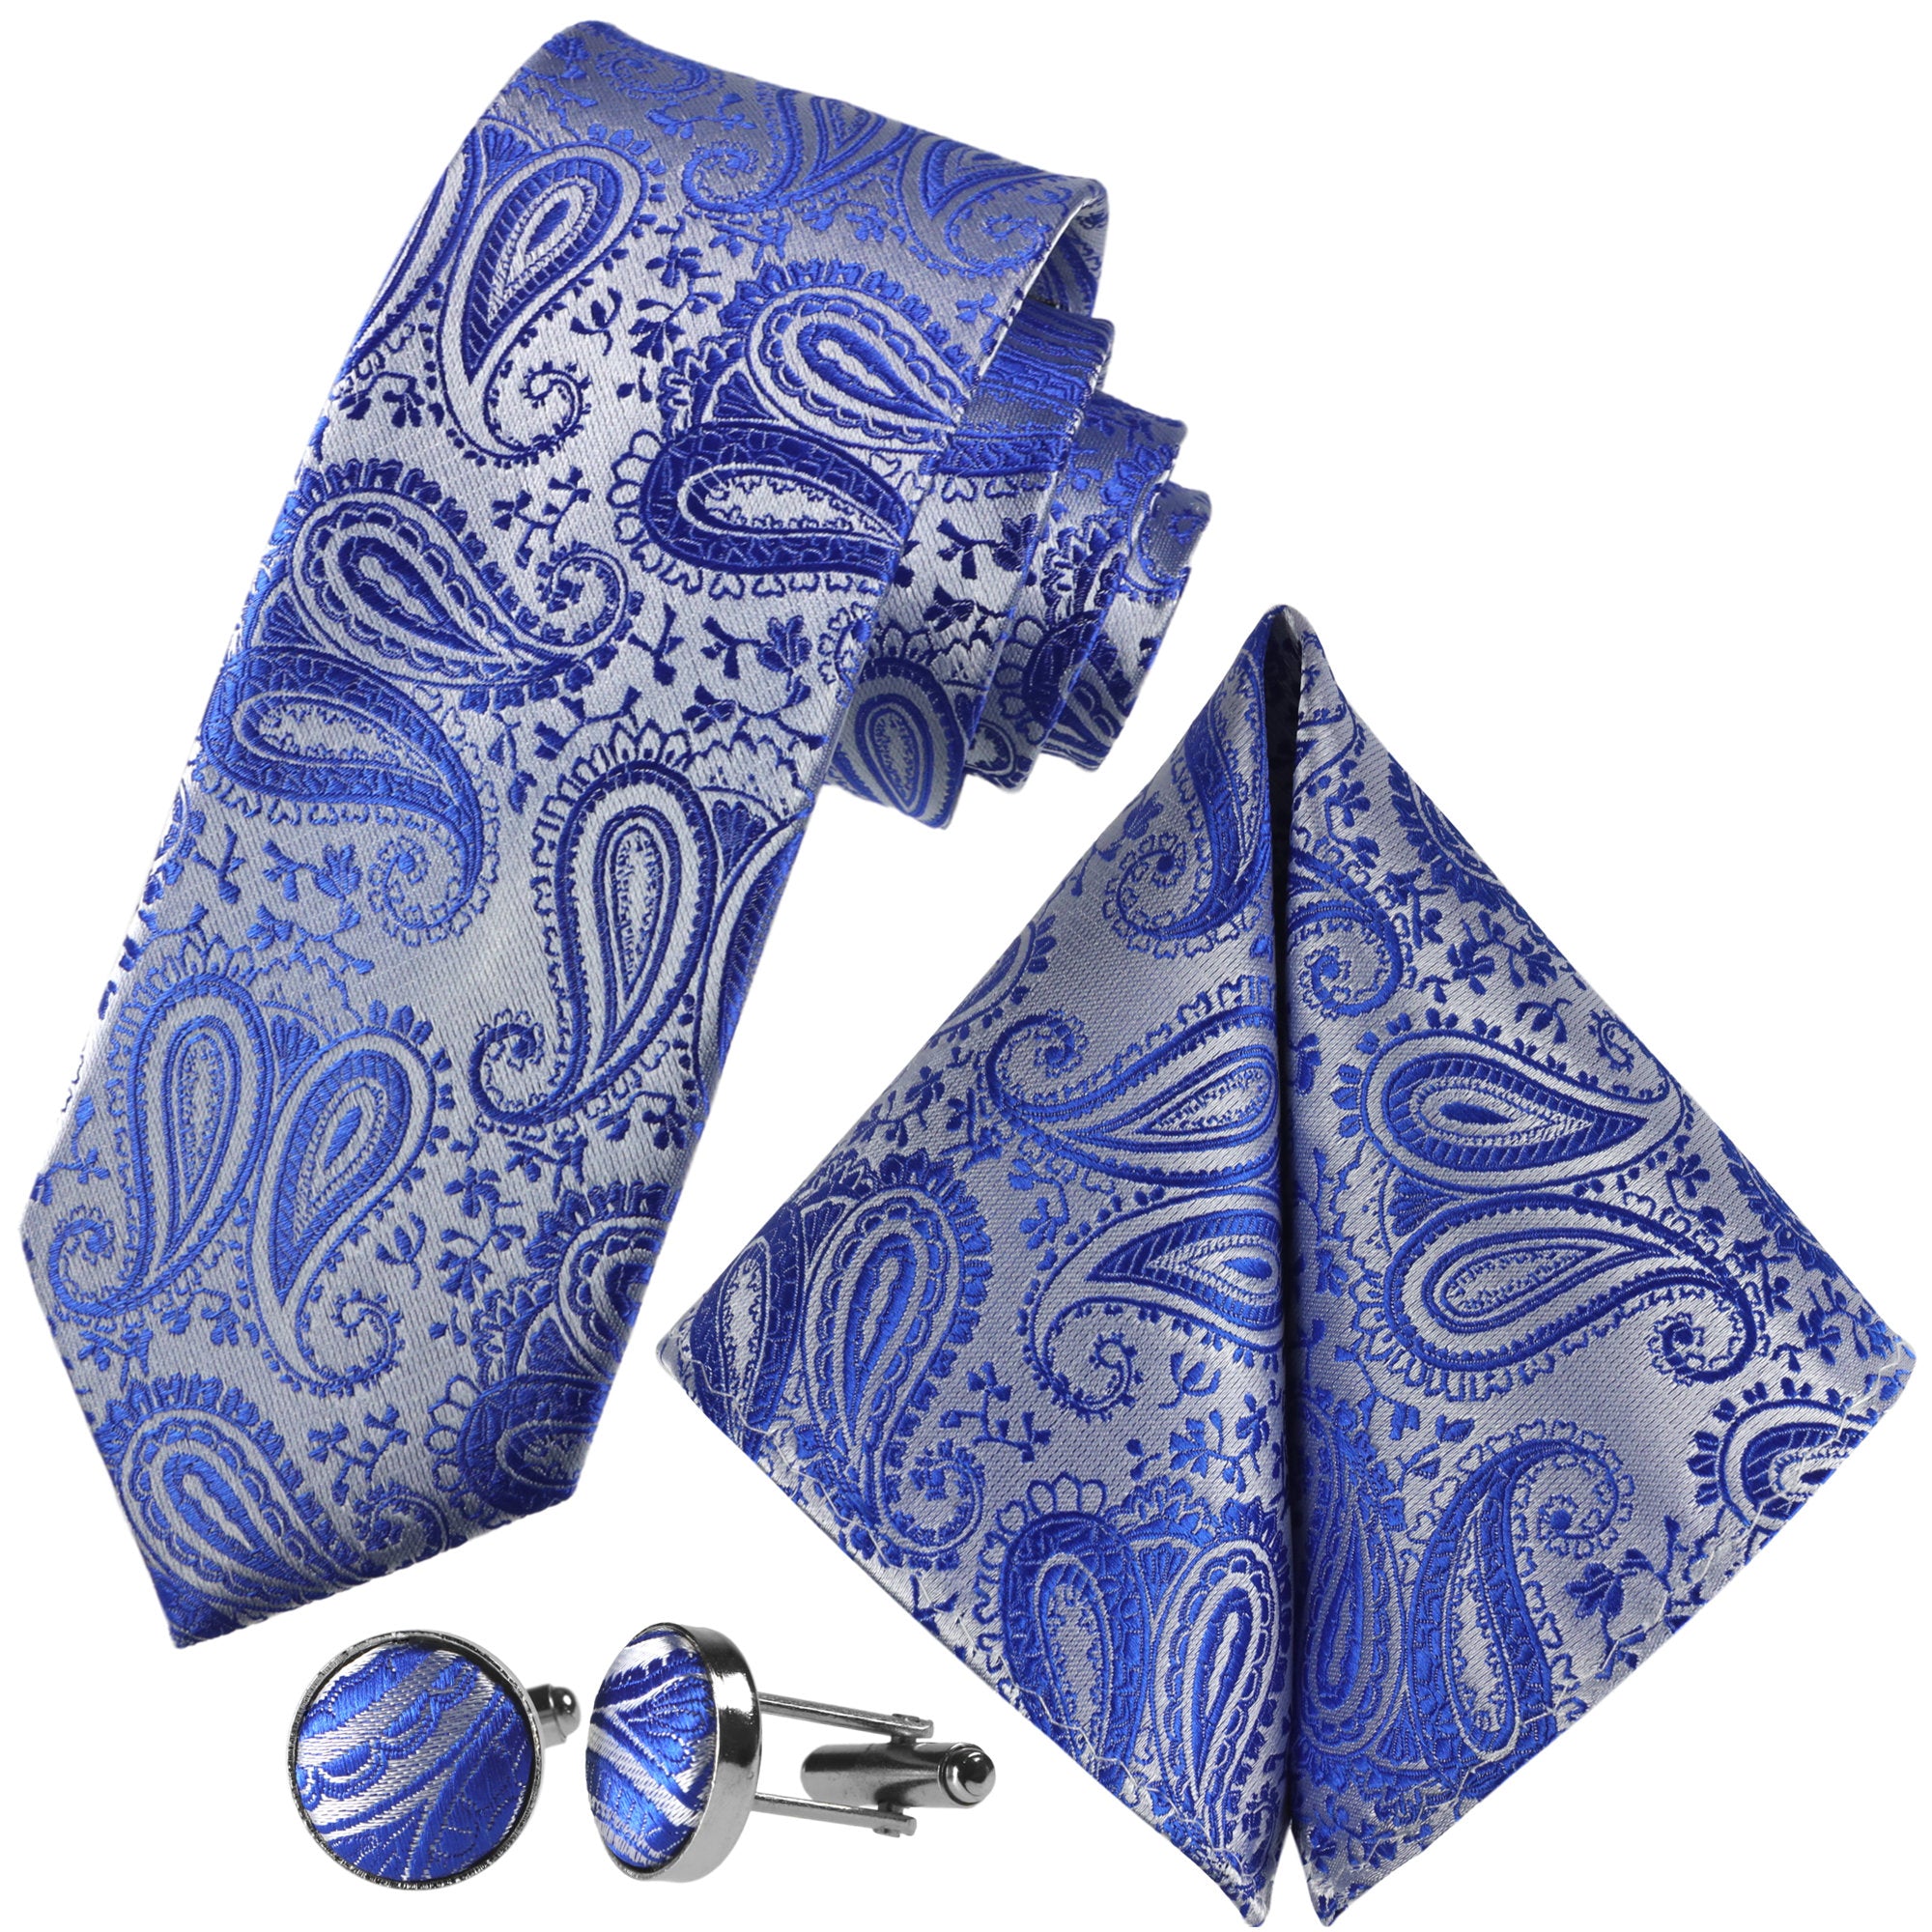 Kaufen | Sie GASSANIshop.de GASSANI für Silber-Blaue - Paisley-Krawatte designt Krawatten